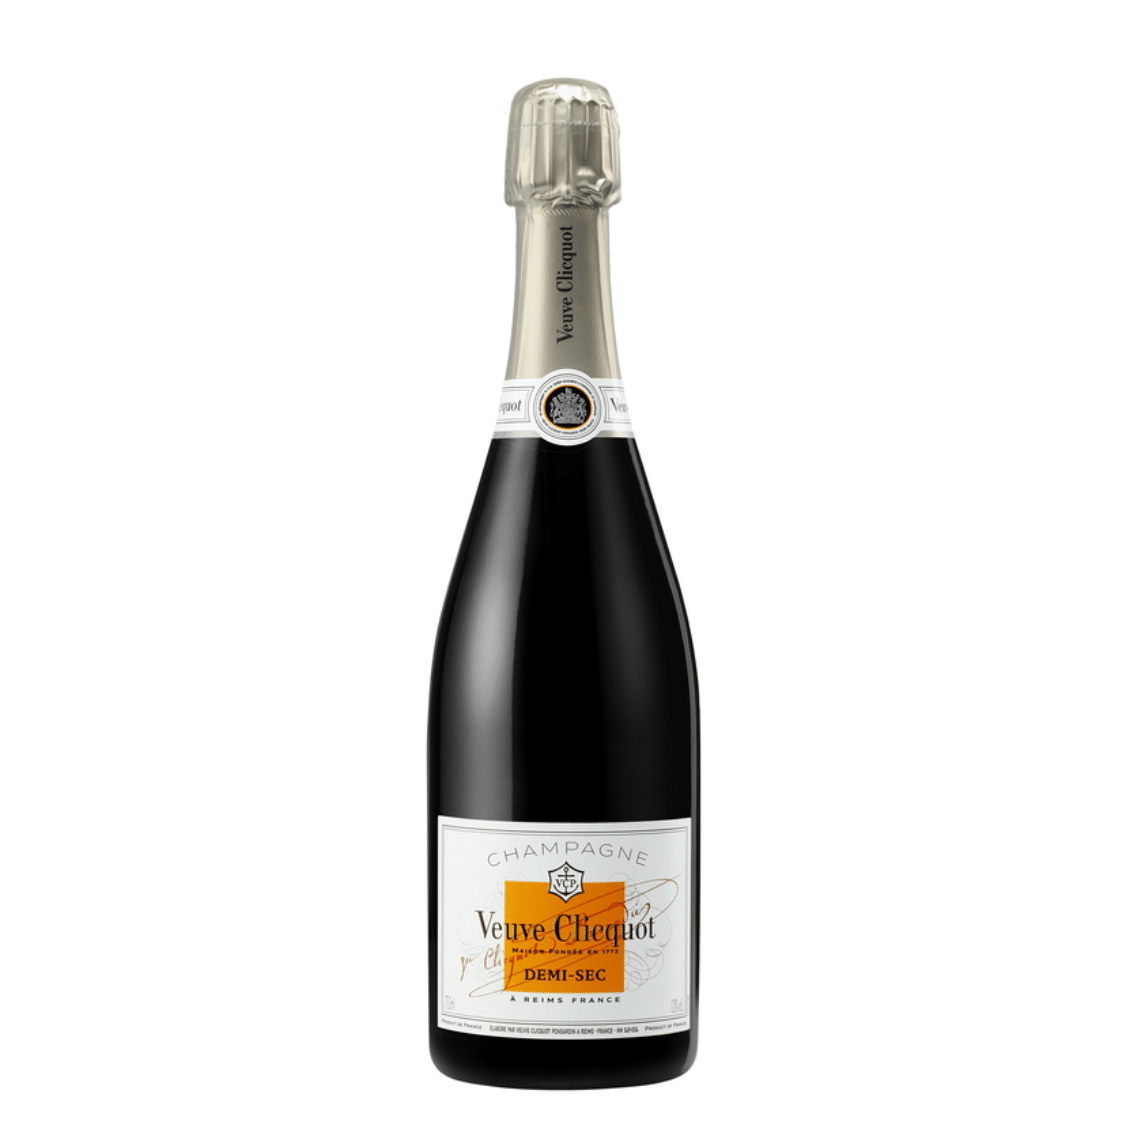 Veuve Clicquot Demi Sec Champagne - Barbank